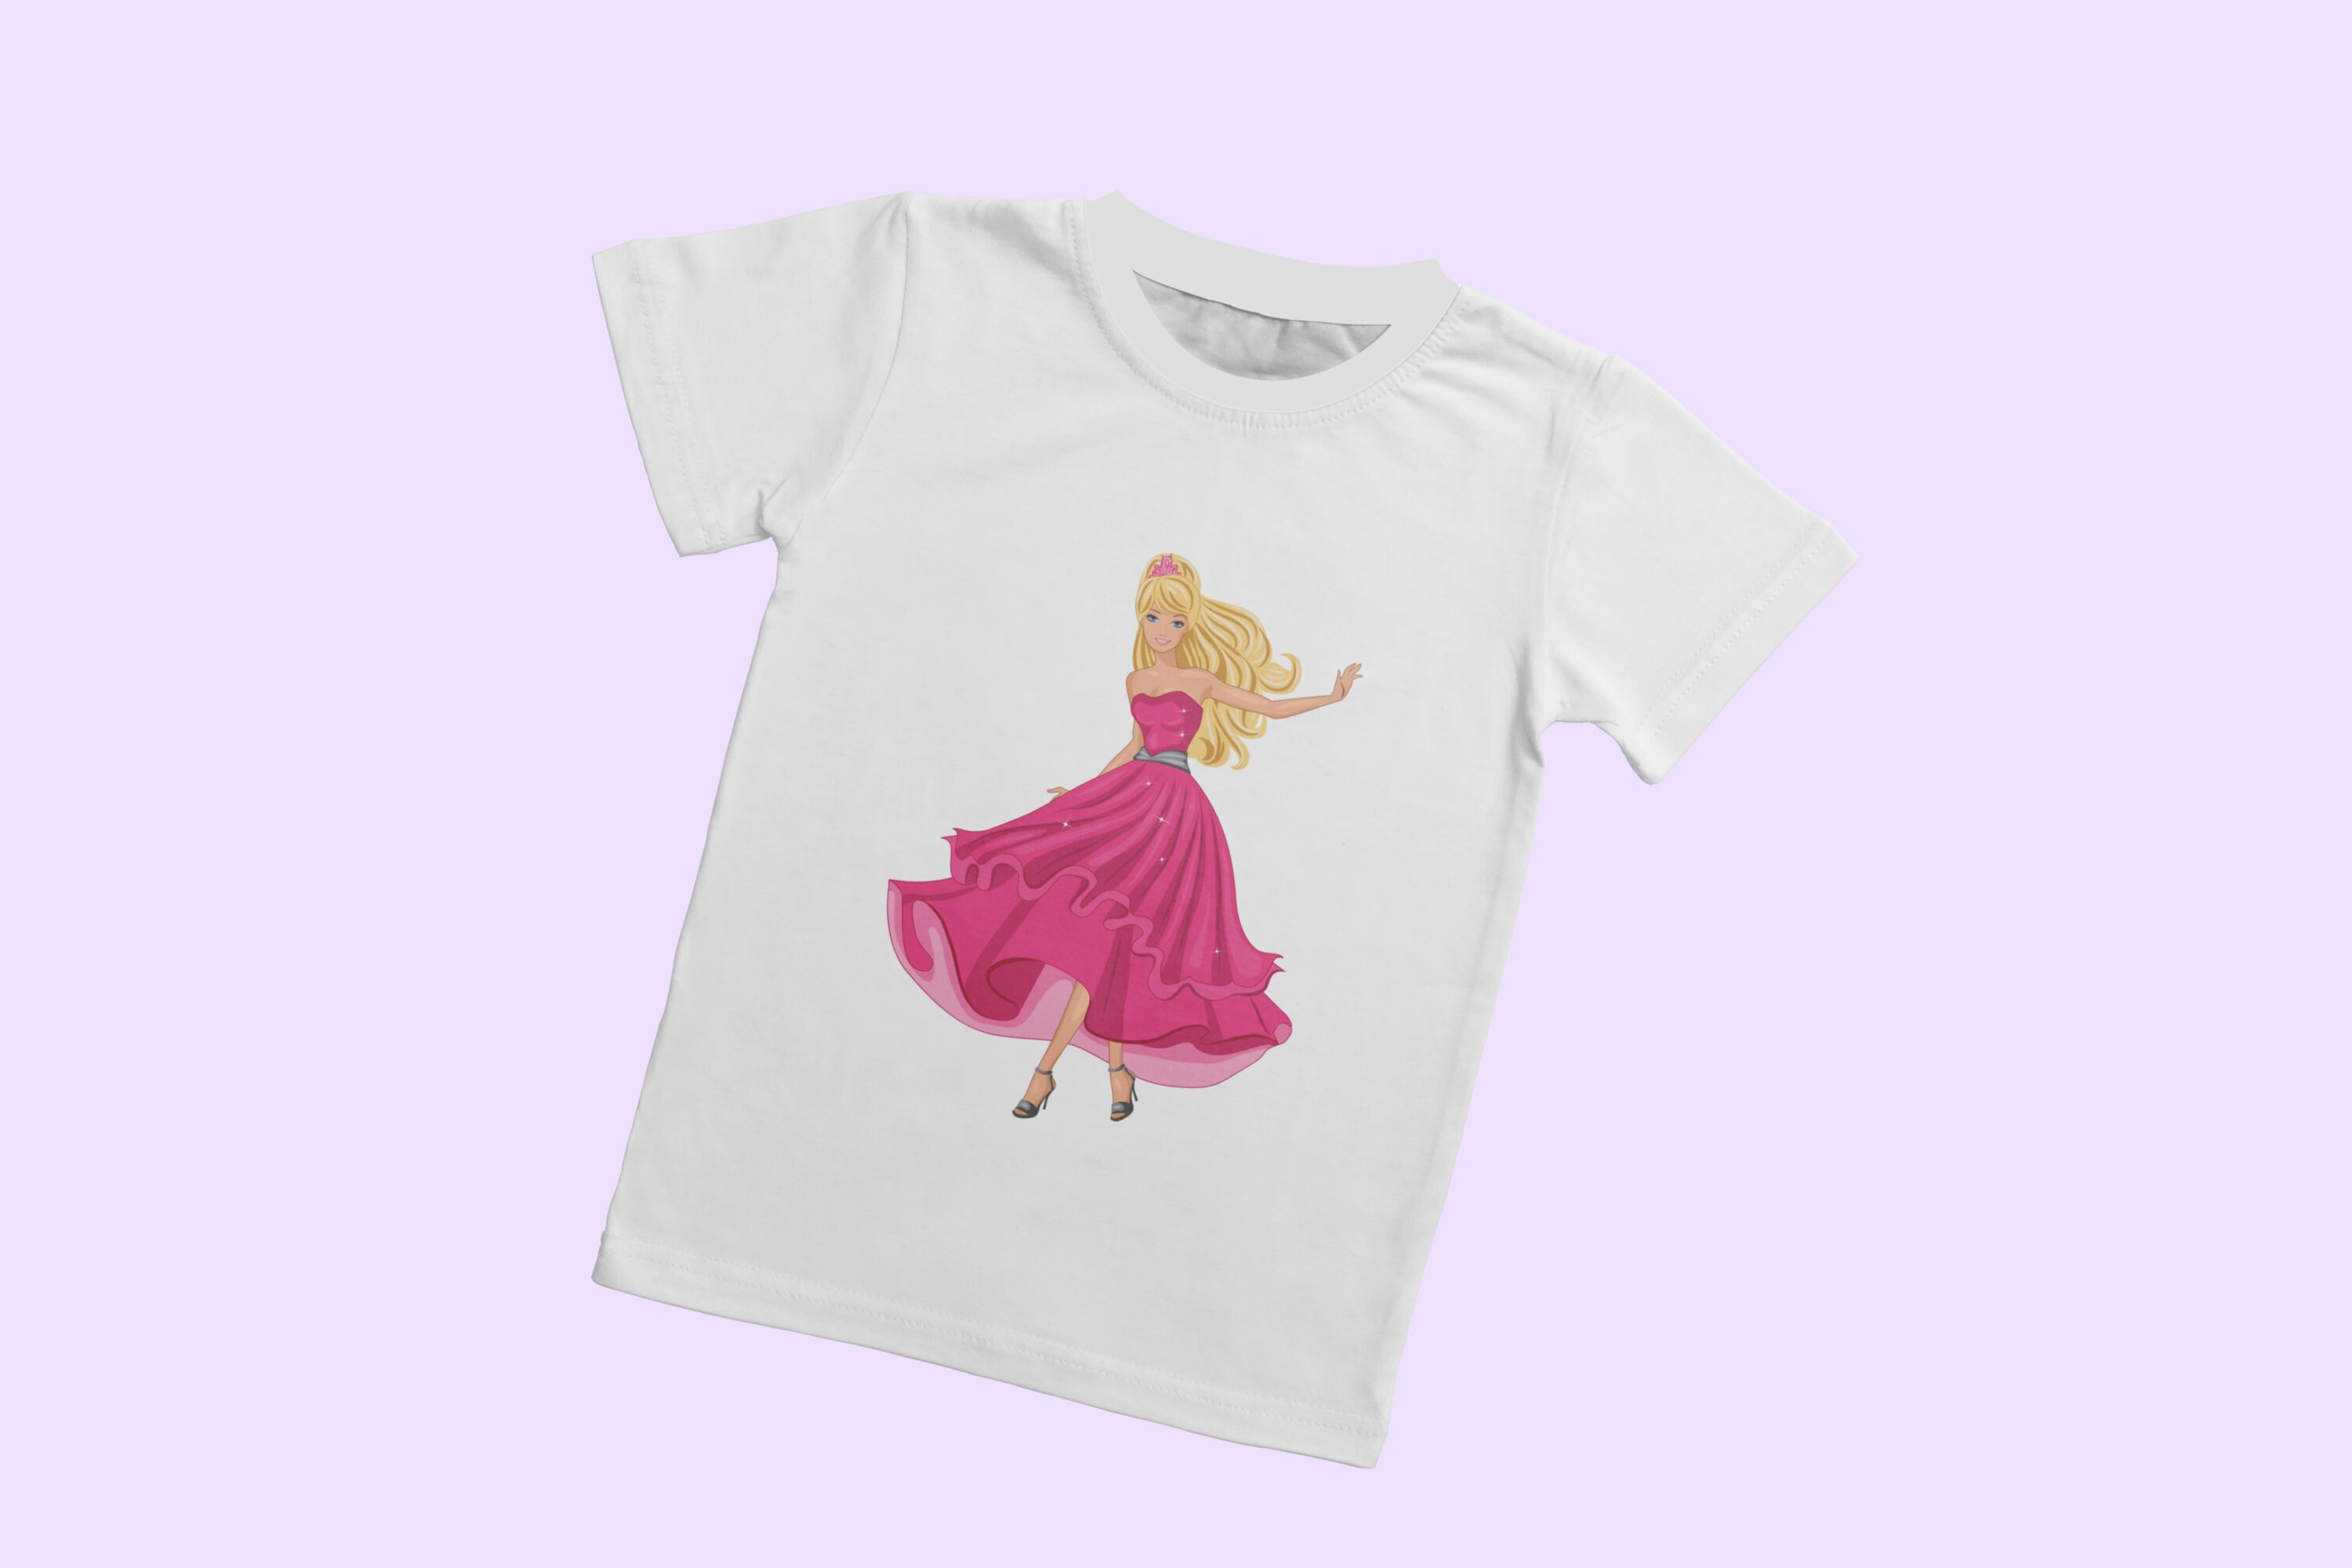 Pink lush dress on a T-shirt.